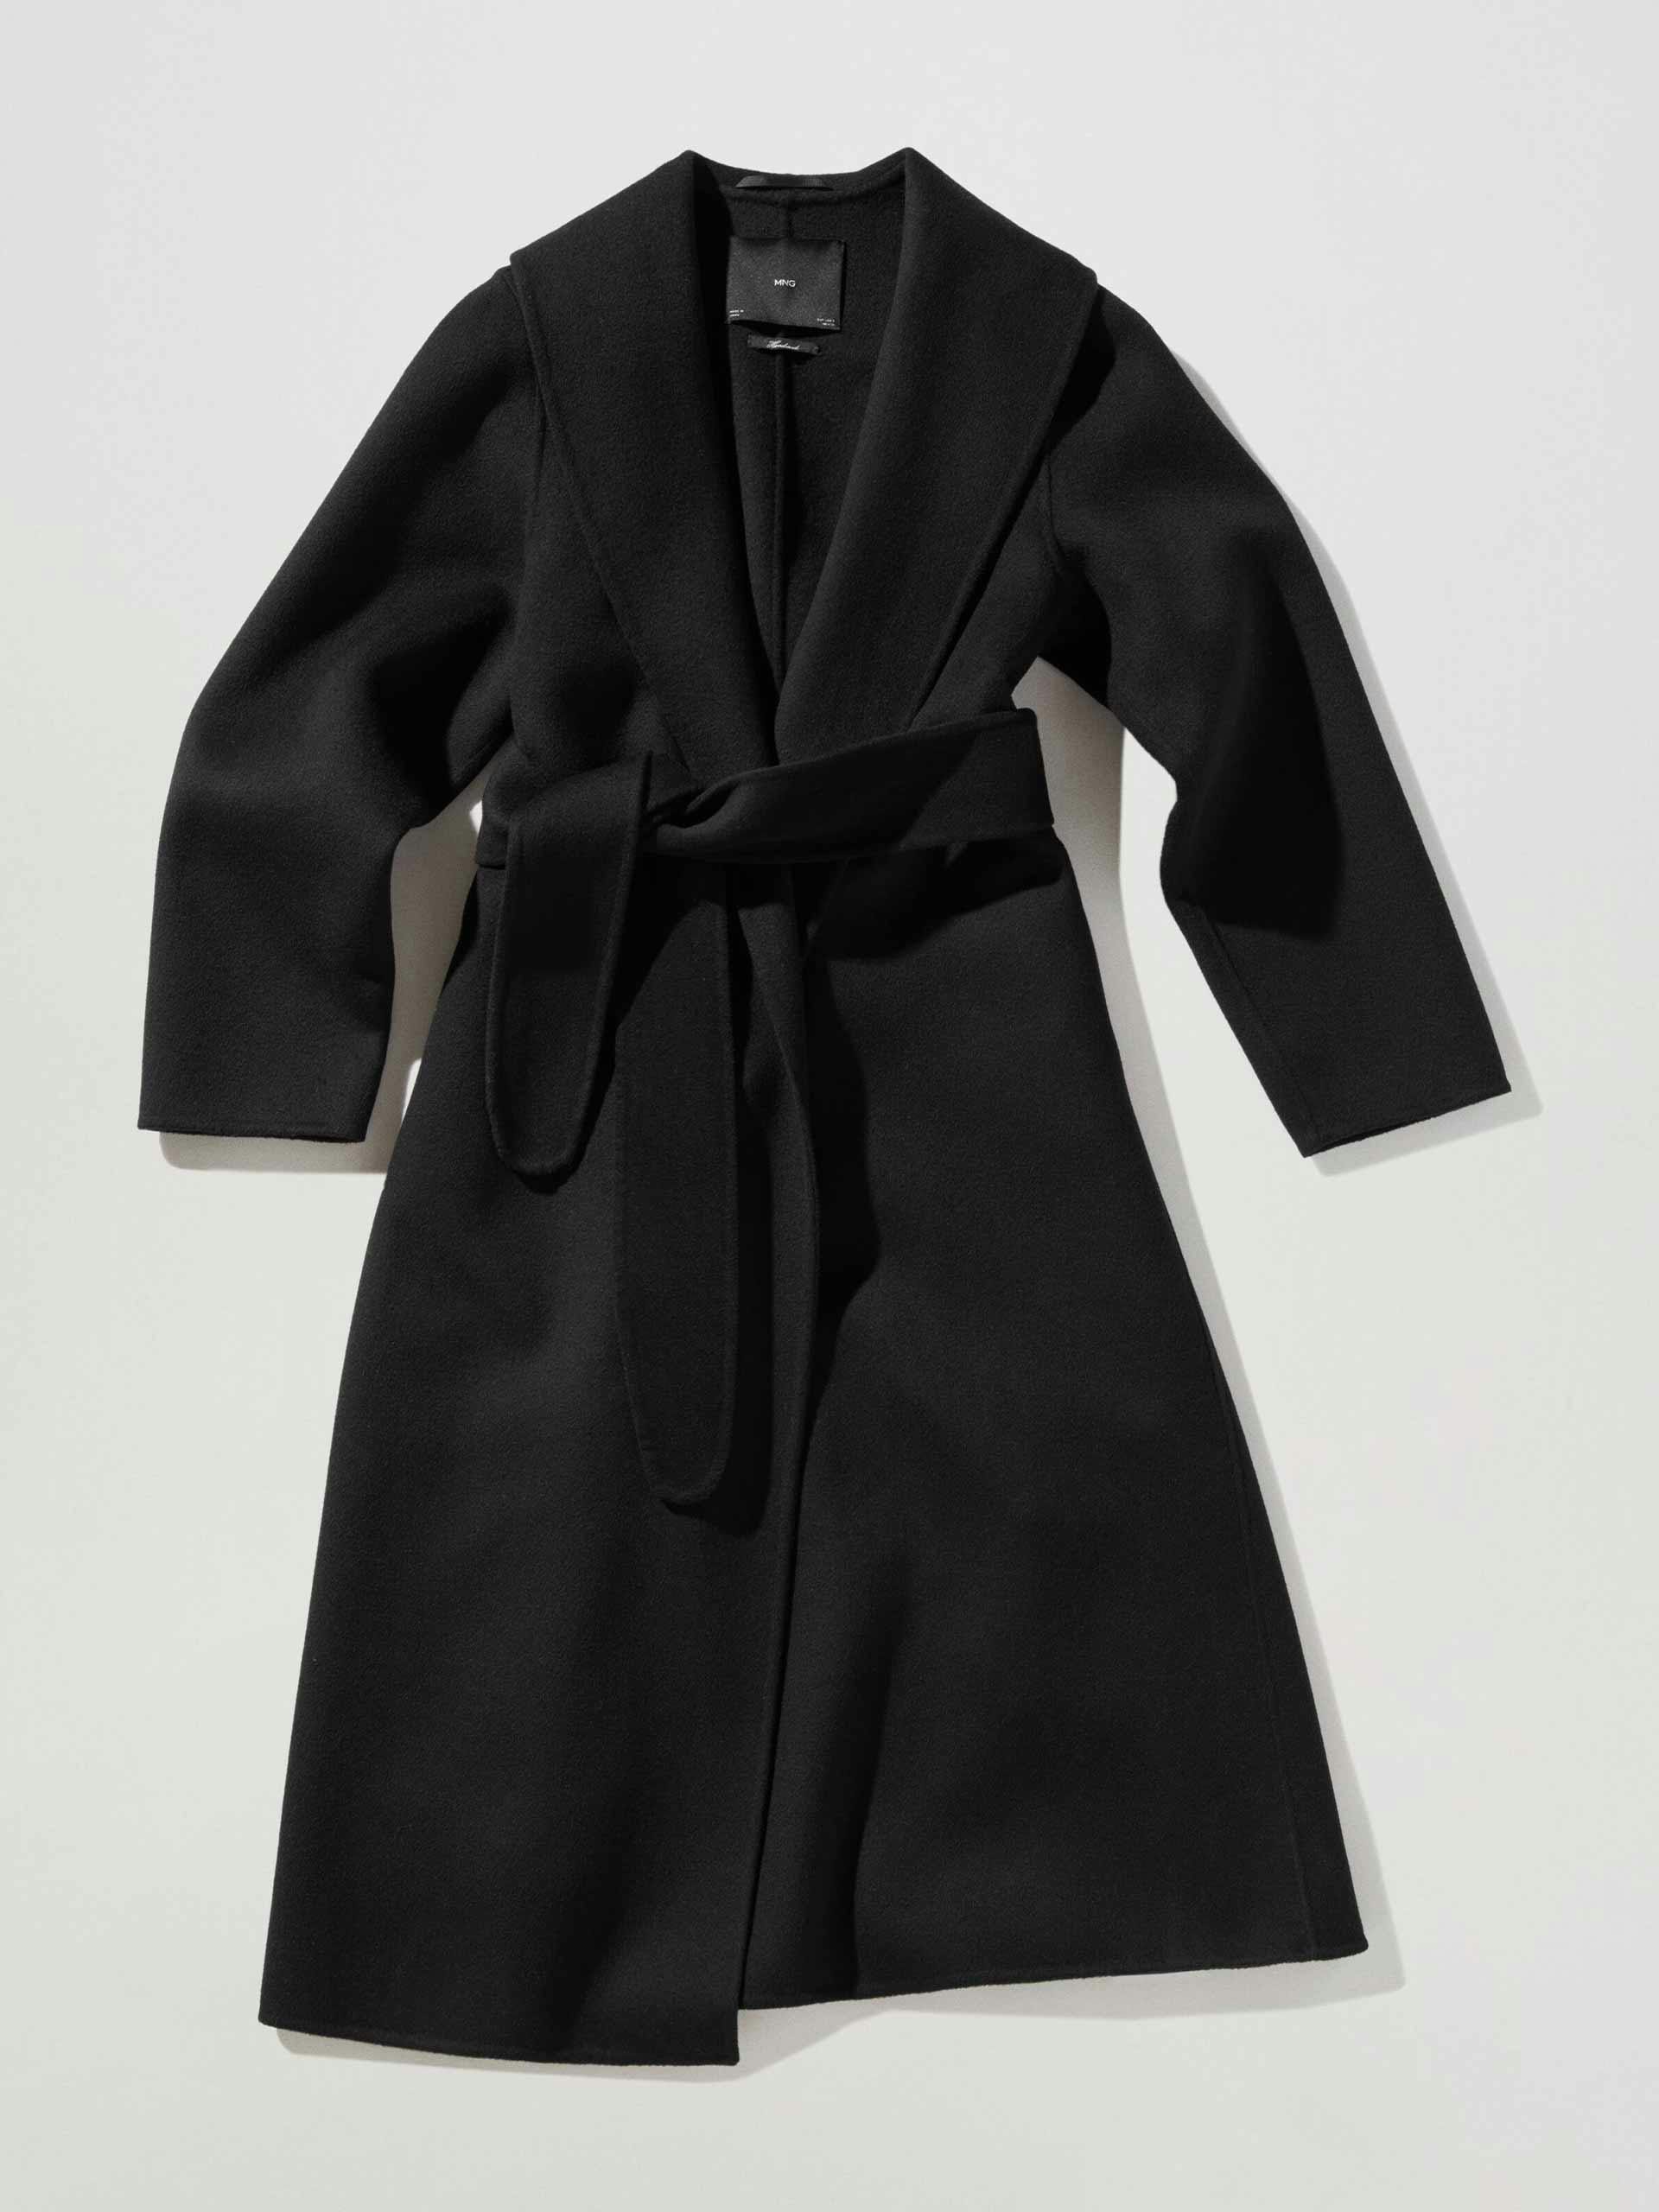 Handmade robe wool coat